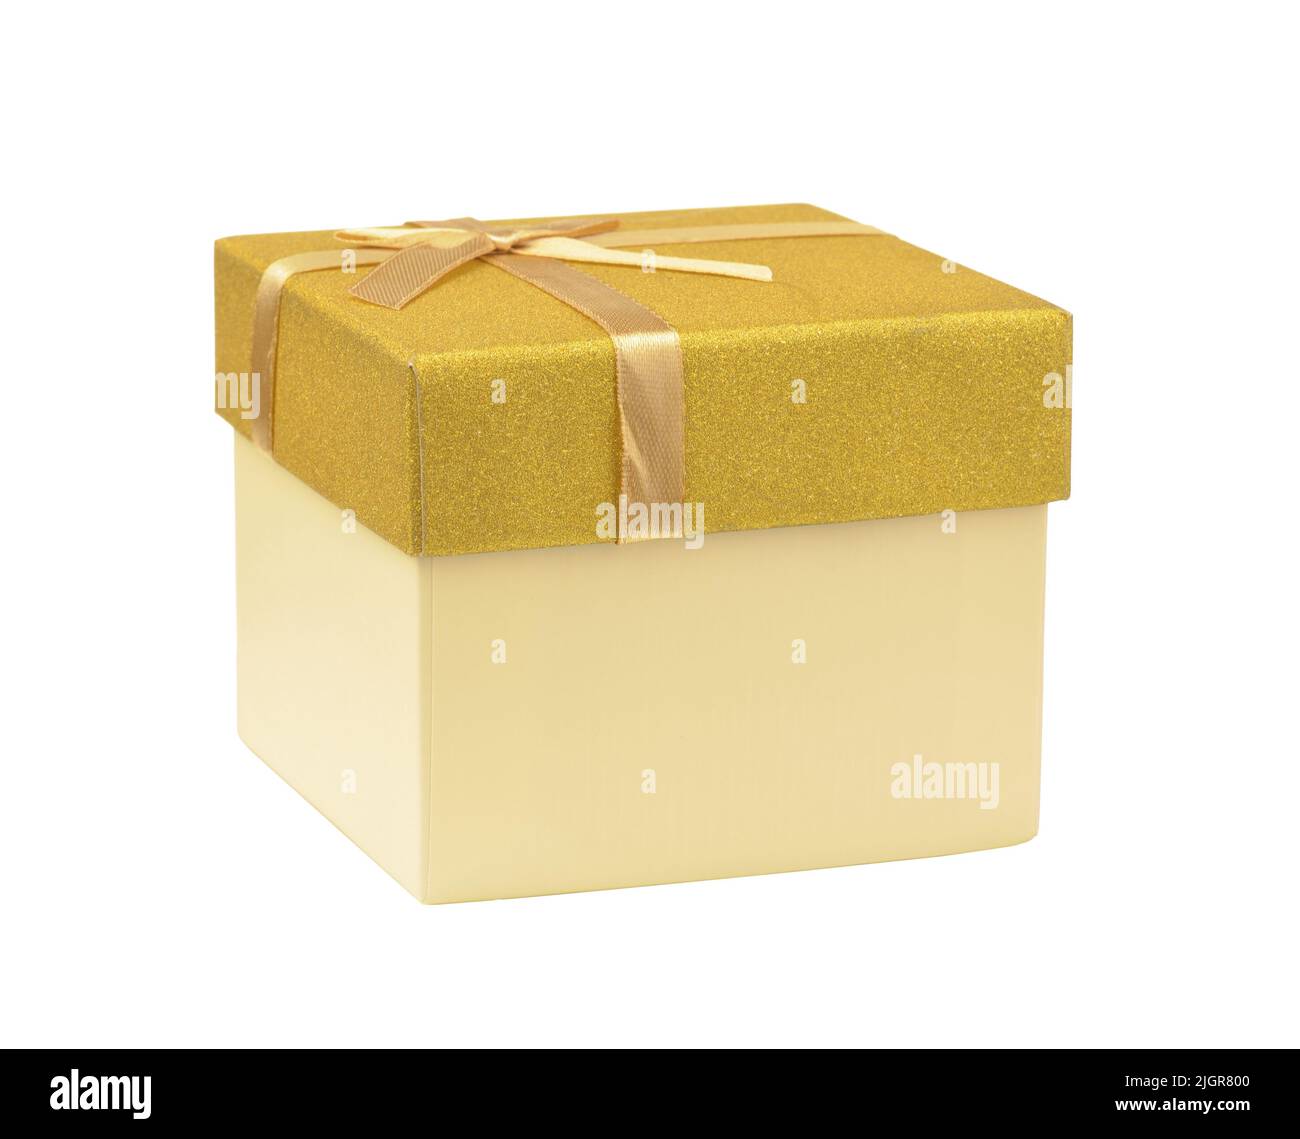 Caja de regalo de papel amarillo con tapa dorada y cinta aislada sobre blanco Foto de stock